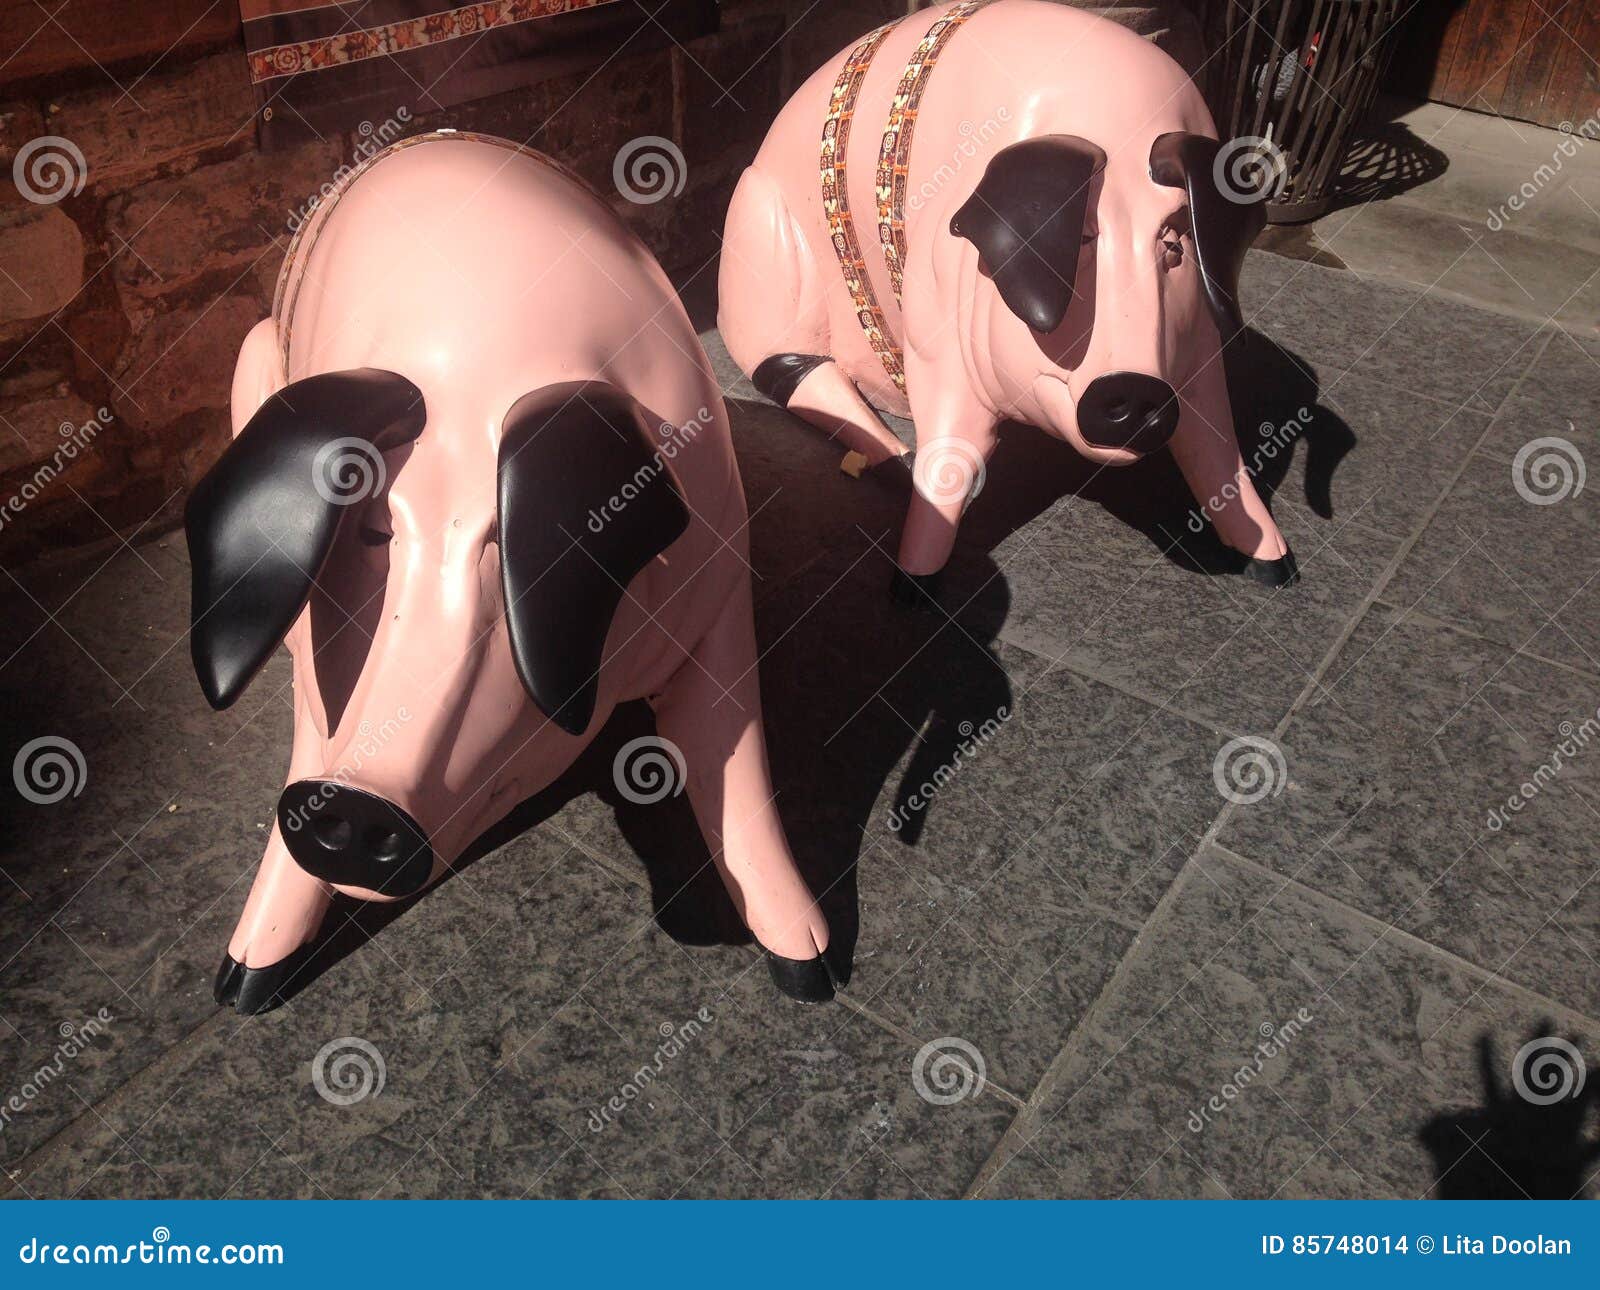 pigs on royal mile edinburgh